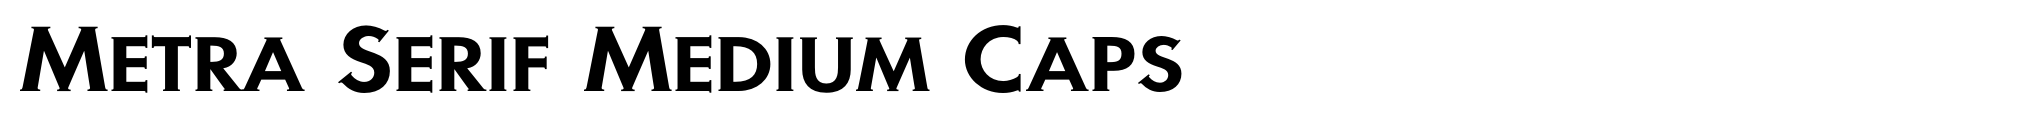 Metra Serif Medium Caps image